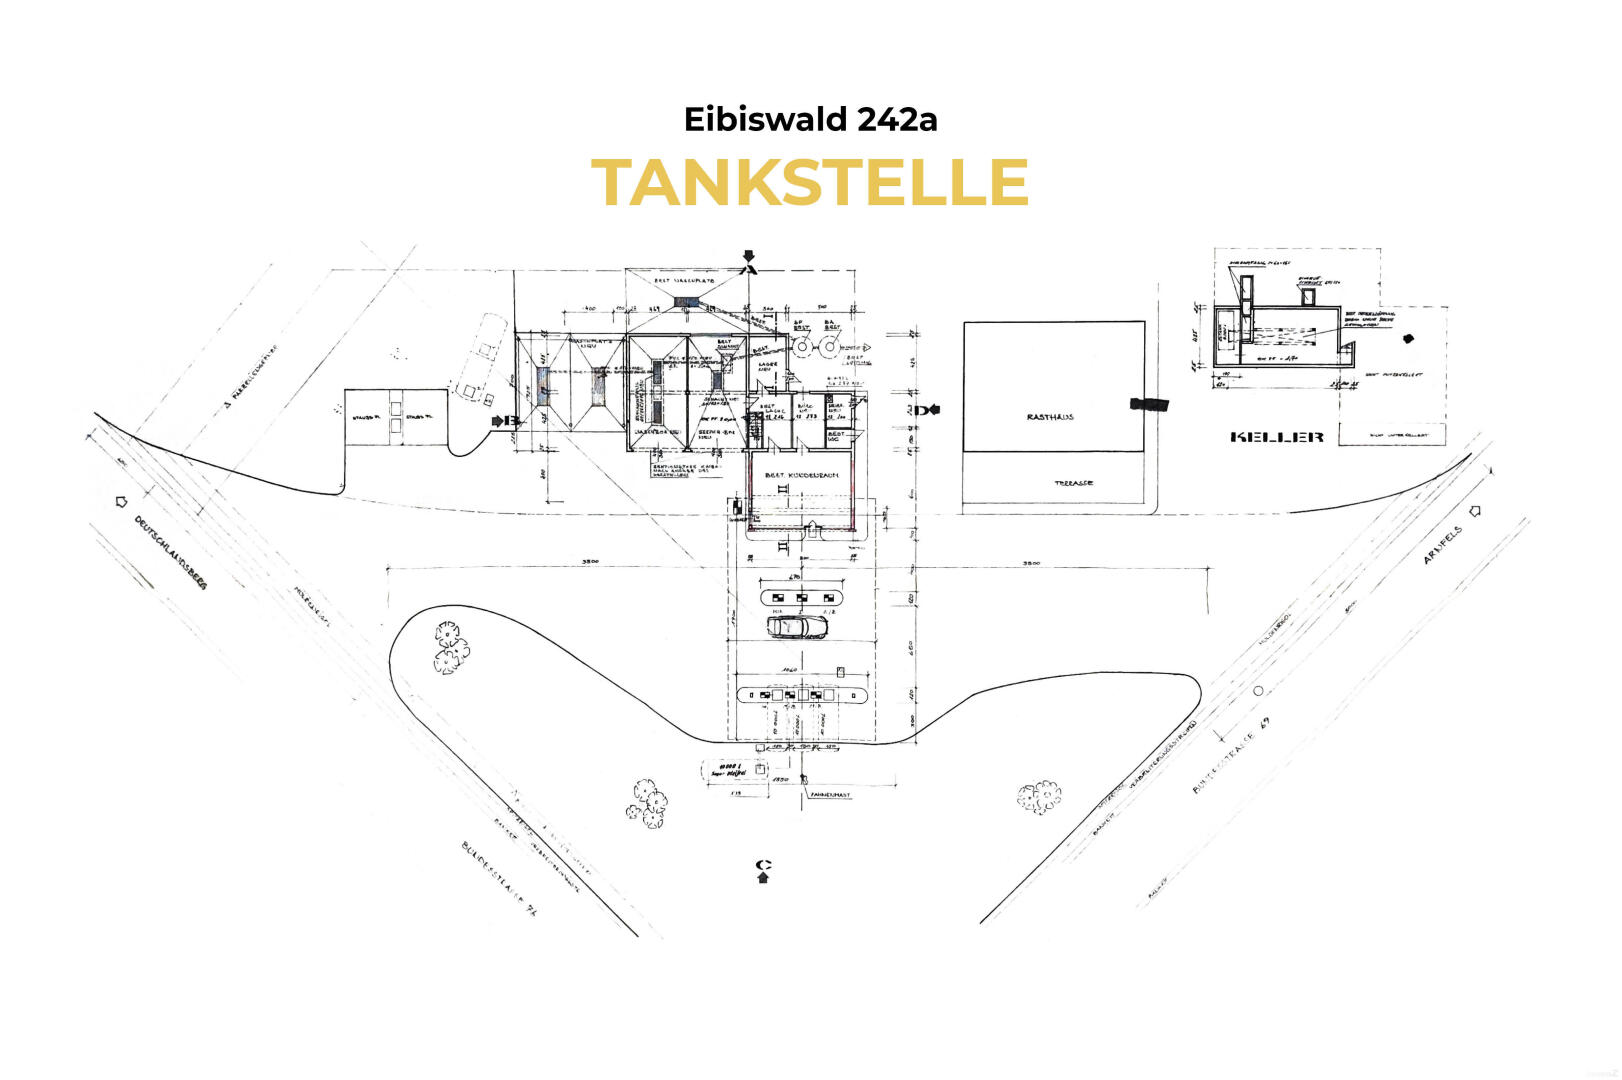 Haus zu kaufen: Eibiswald, 8552 Eibiswald - 5 Tankstelle 242a